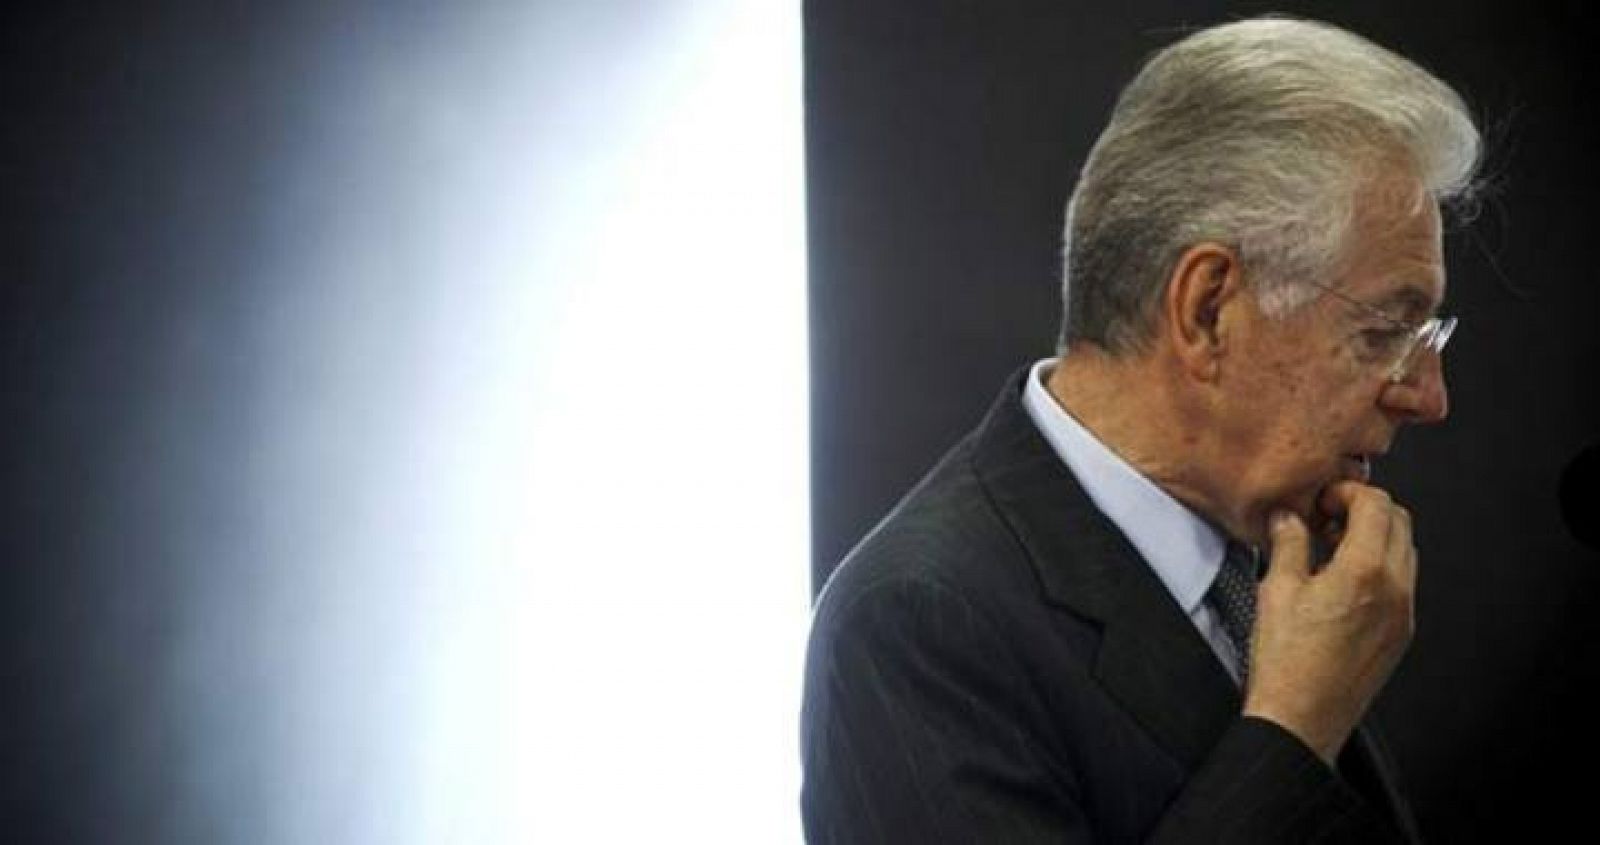 Mario Monti pronuncia un discurso durante la conferencia "Revitalizar Europa" el pasado 4 de octubre